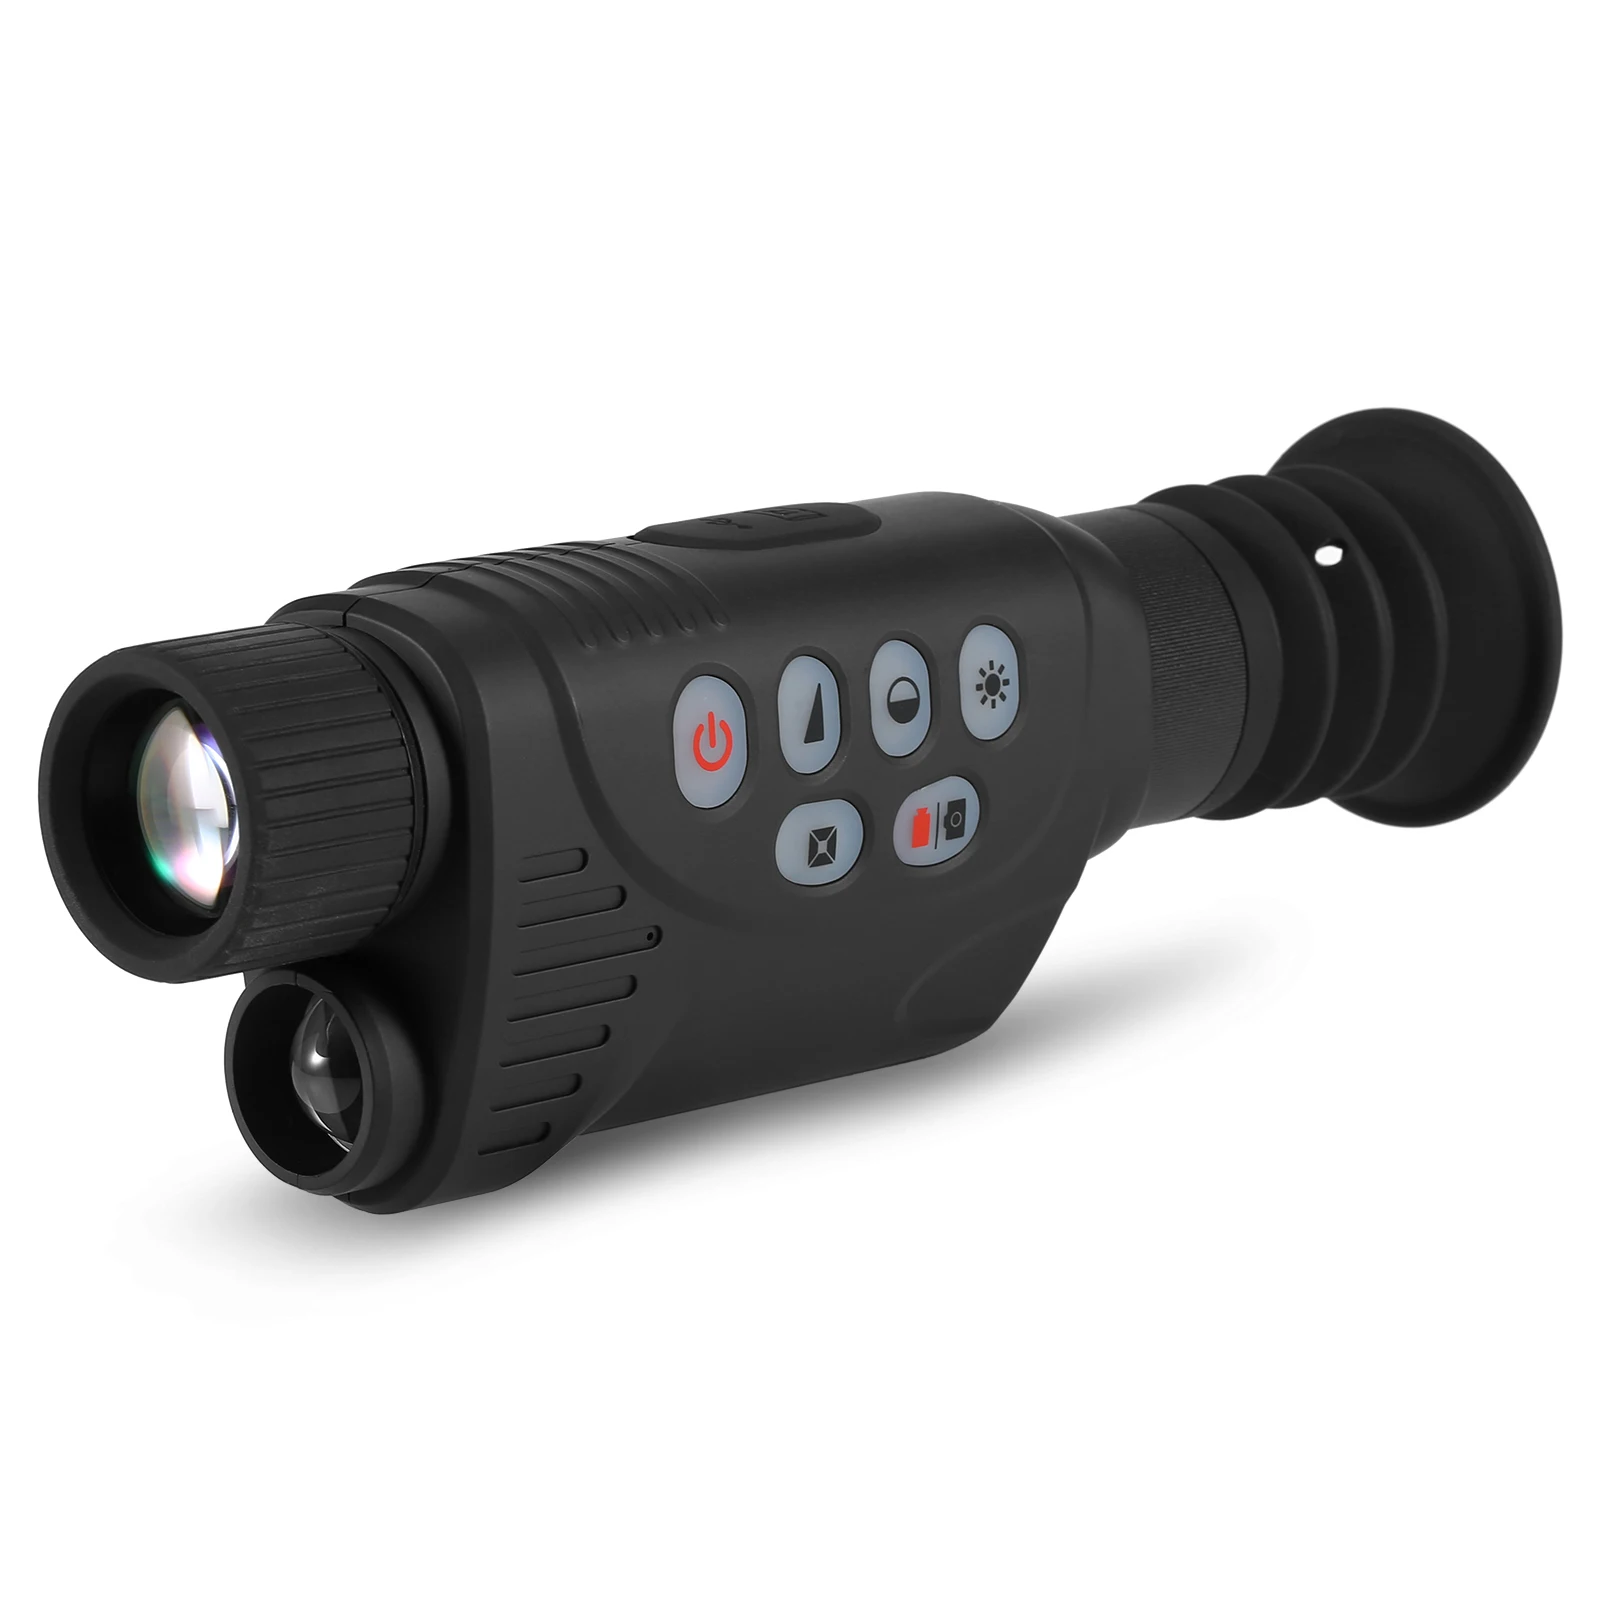 

Монокуляр 2x, цифровой зум, полноцветный монокуляр ночного видения 1080P, Видео, Фото, Wi-Fi, ночное видение